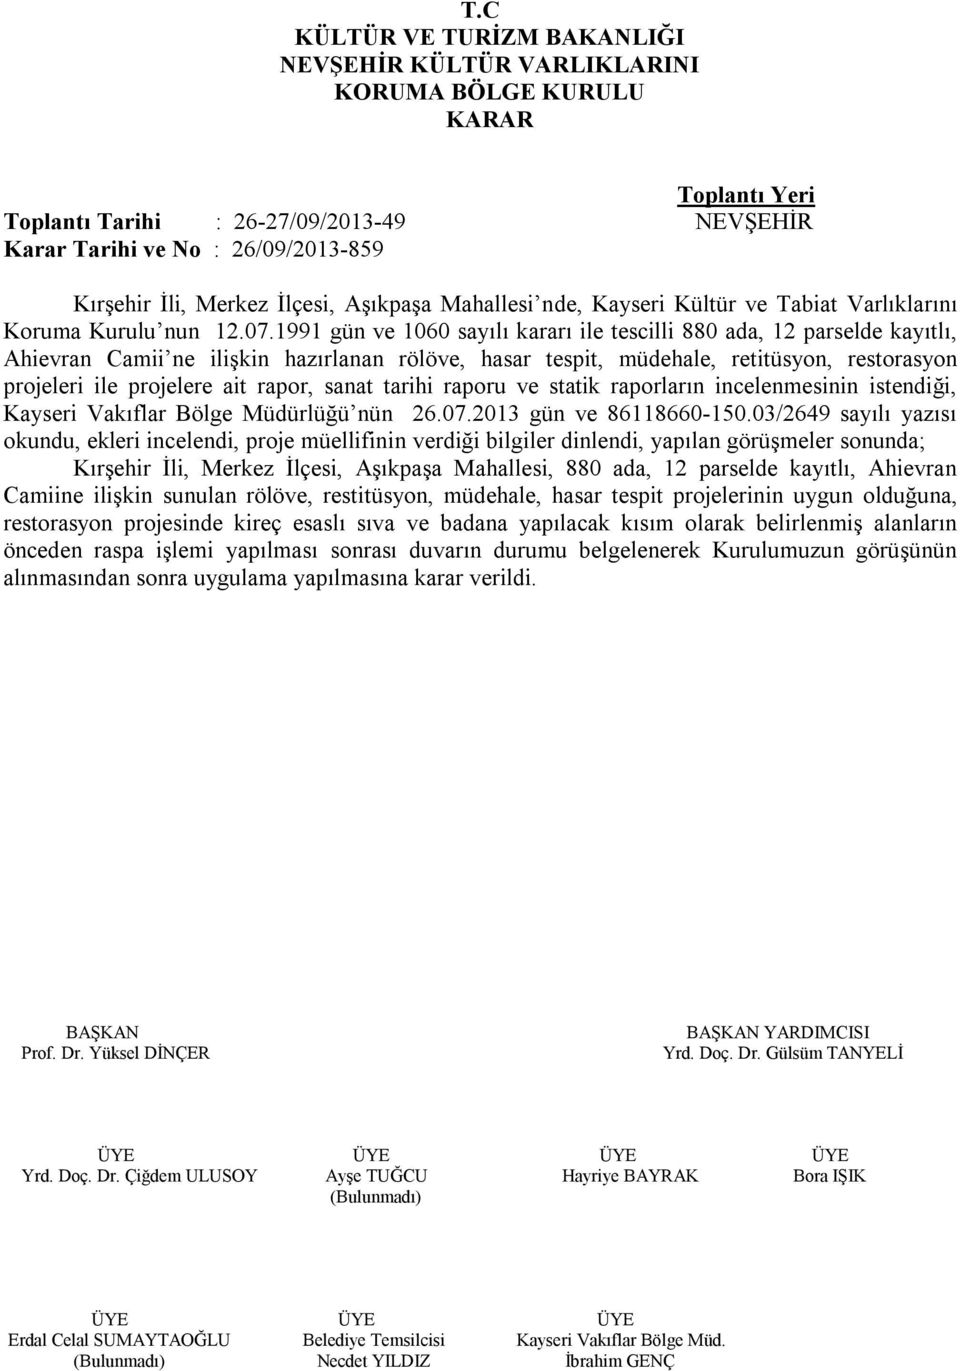 rapor, sanat tarihi raporu ve statik raporların incelenmesinin istendiği, Kayseri Vakıflar Bölge Müdürlüğü nün 26.07.2013 gün ve 86118660-150.